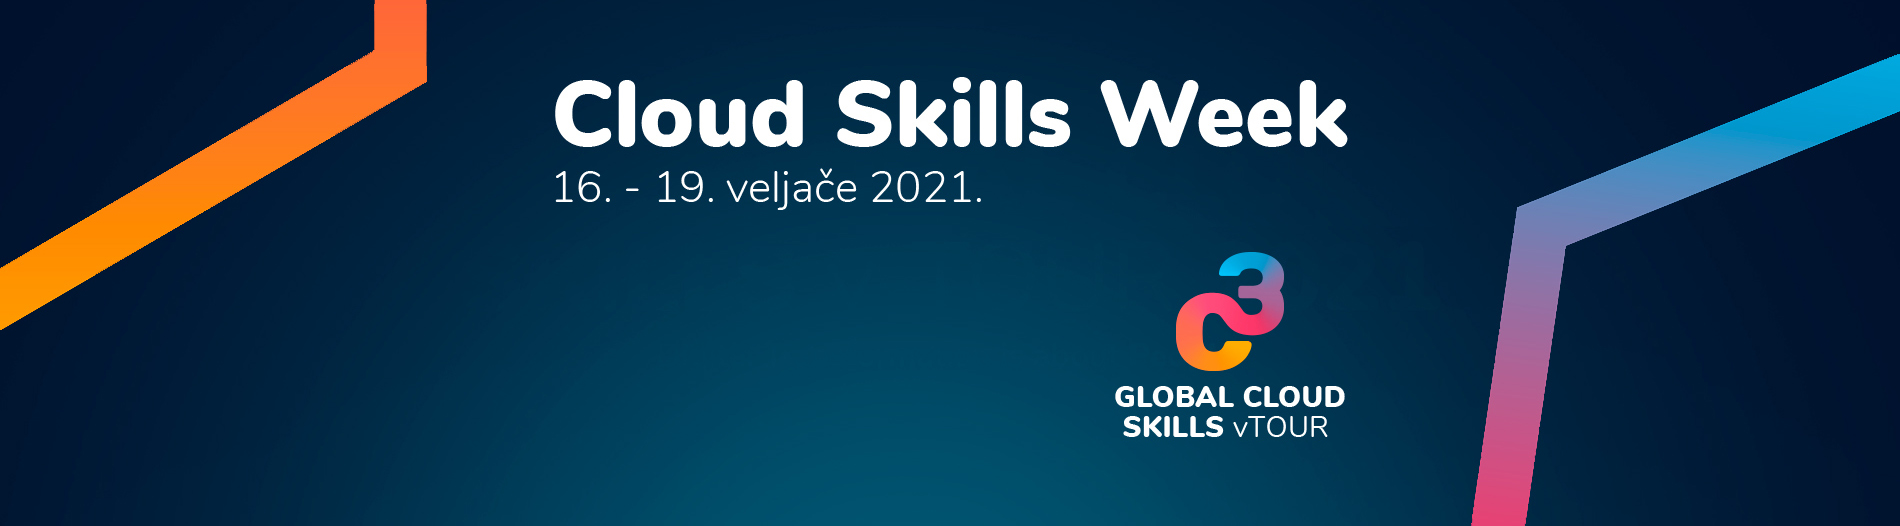 Image for Cloud Skills Week